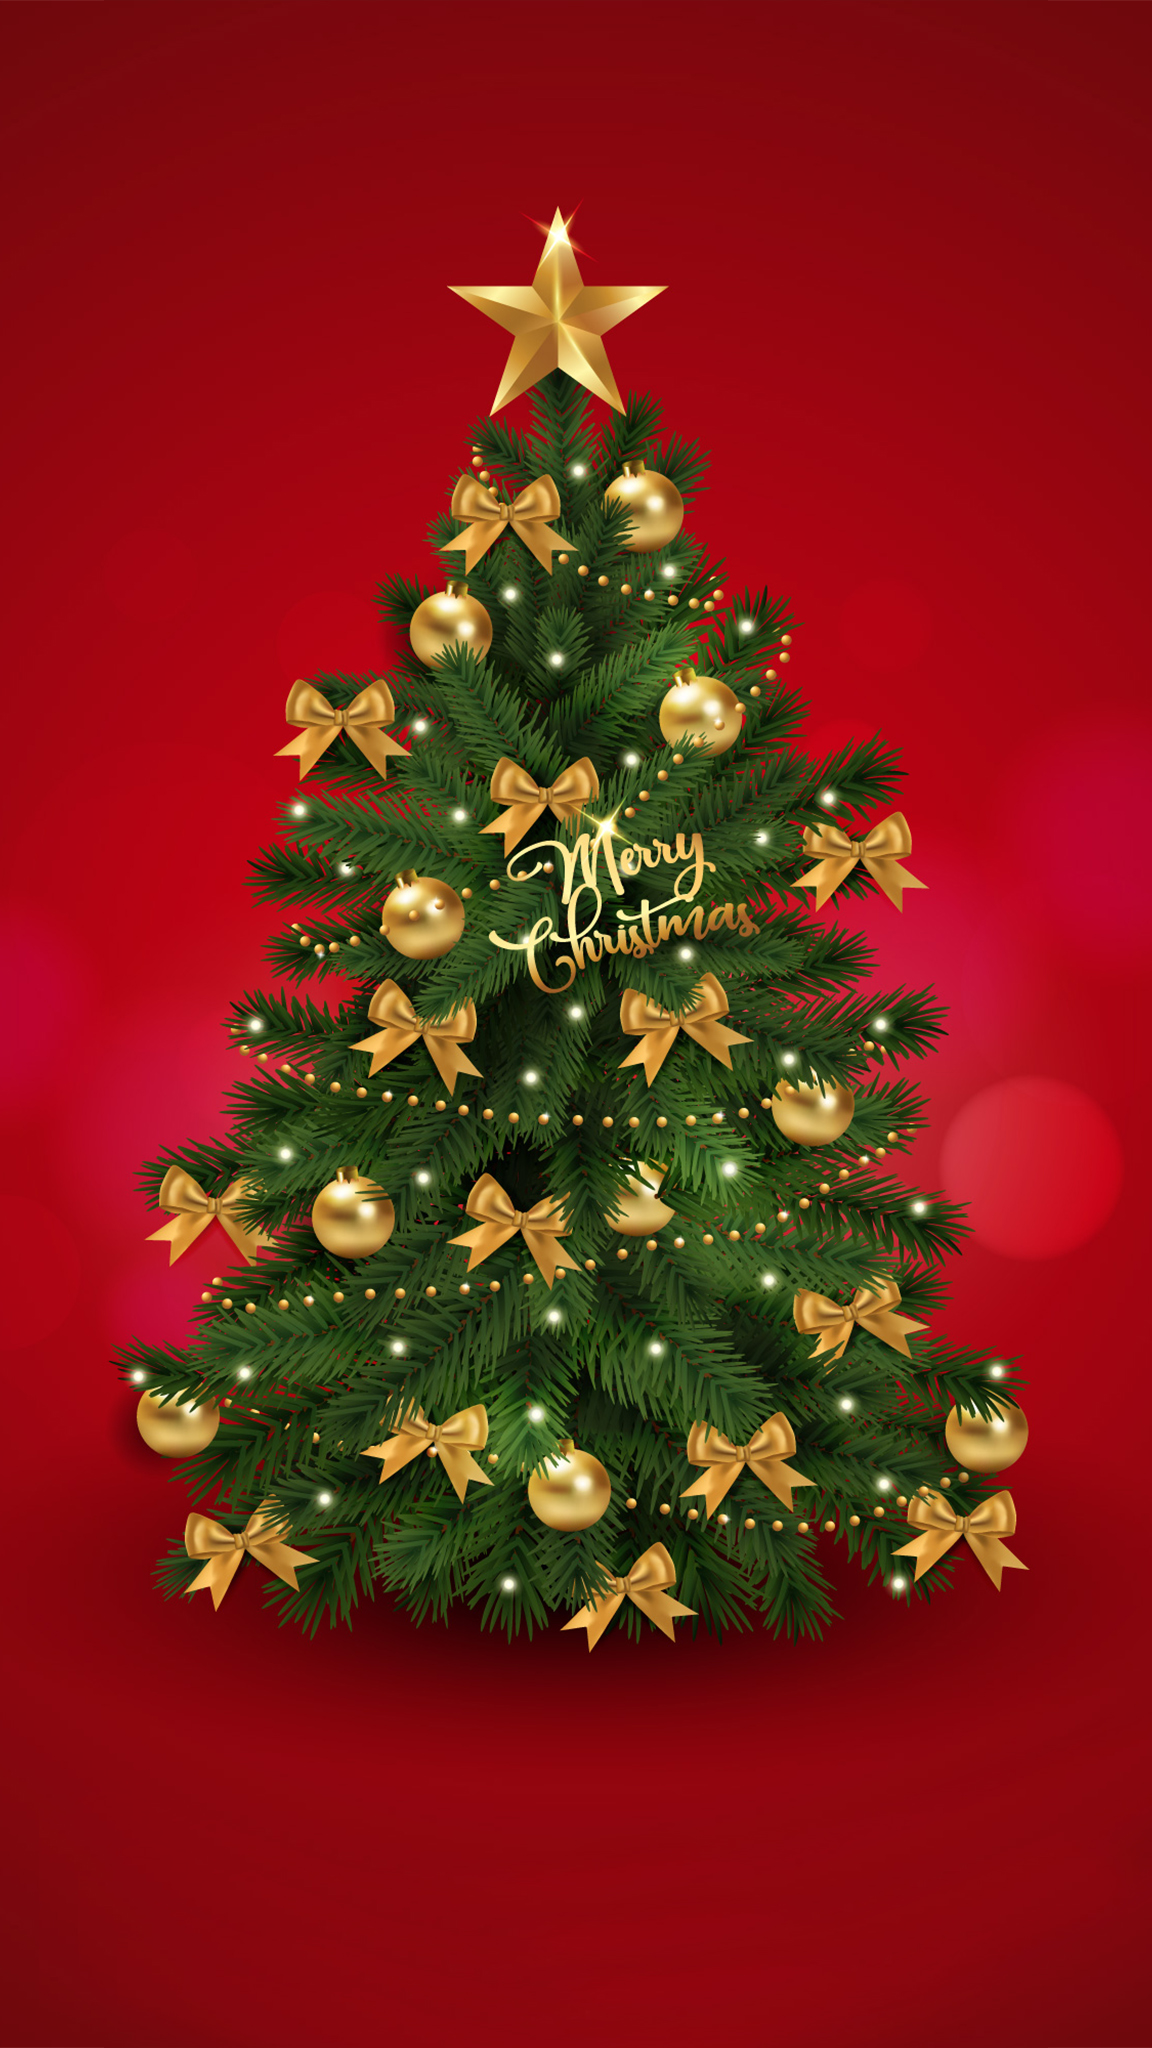 Cây Thông Noel: Những chiếc cây thông Noel không chỉ là một vật trang trí đẹp mà còn đem lại cảm giác hân hoan và vui tươi cho mùa lễ hội. Cùng chiêm ngưỡng những hình ảnh cây thông Noel tuyệt đẹp và phấn khởi đầy sắc màu.